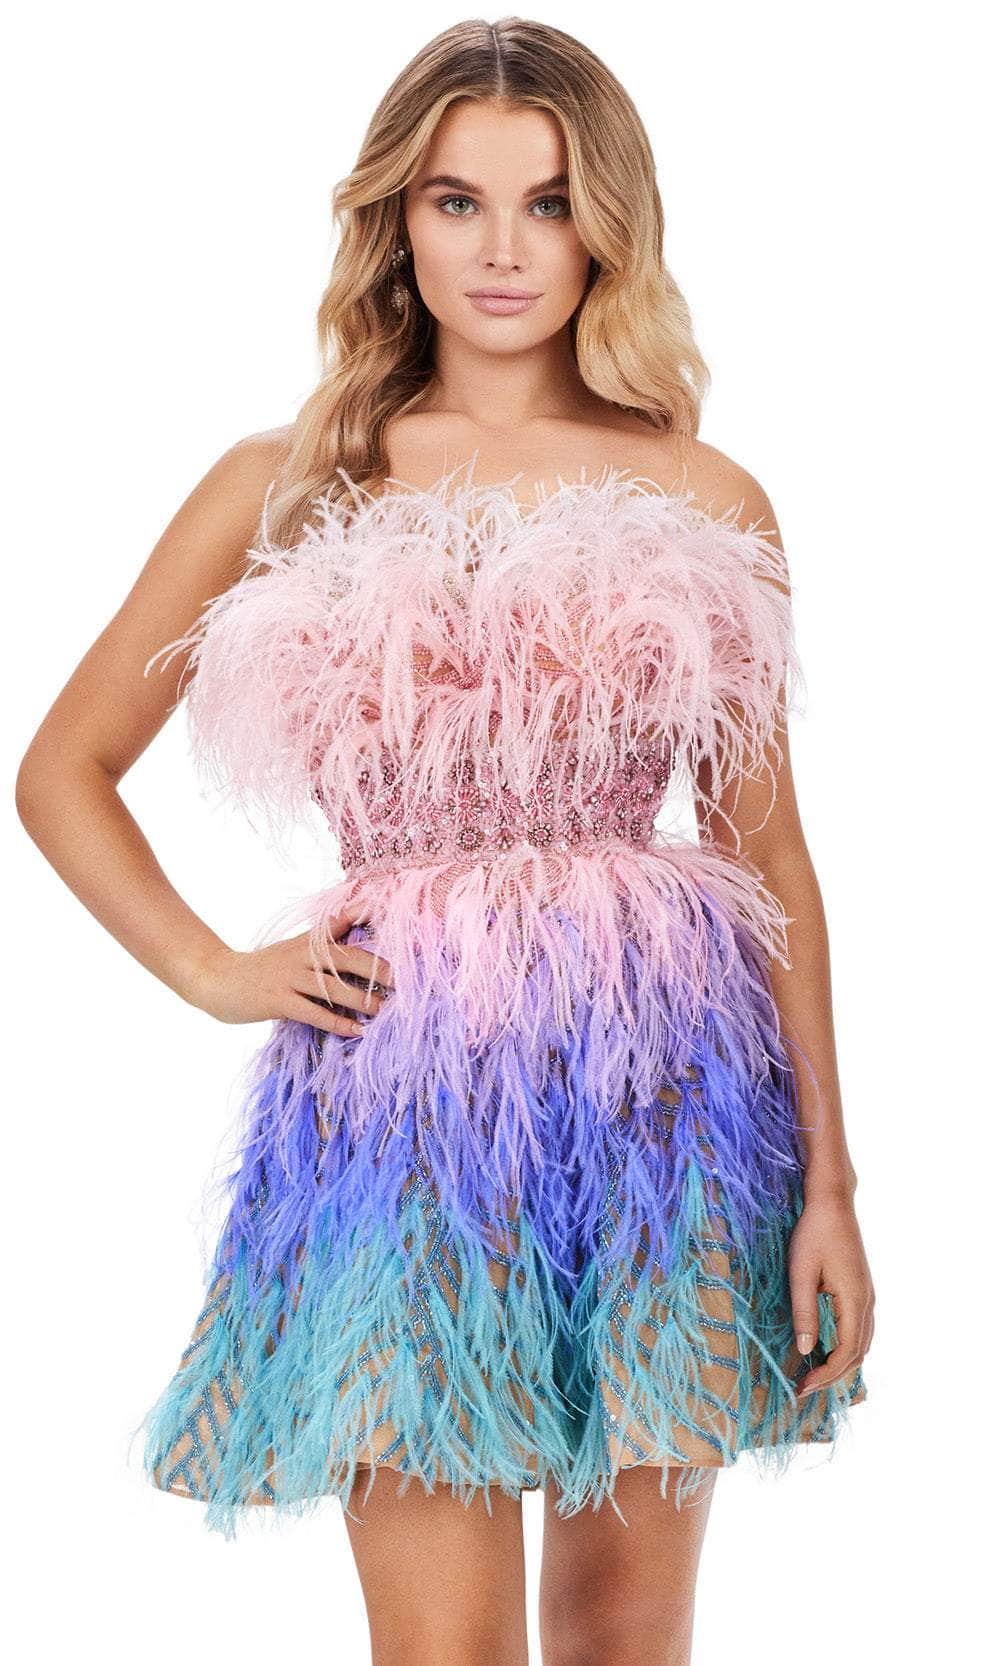 Ashley Lauren 4670 - Strapless Embellished Cocktail Dress
